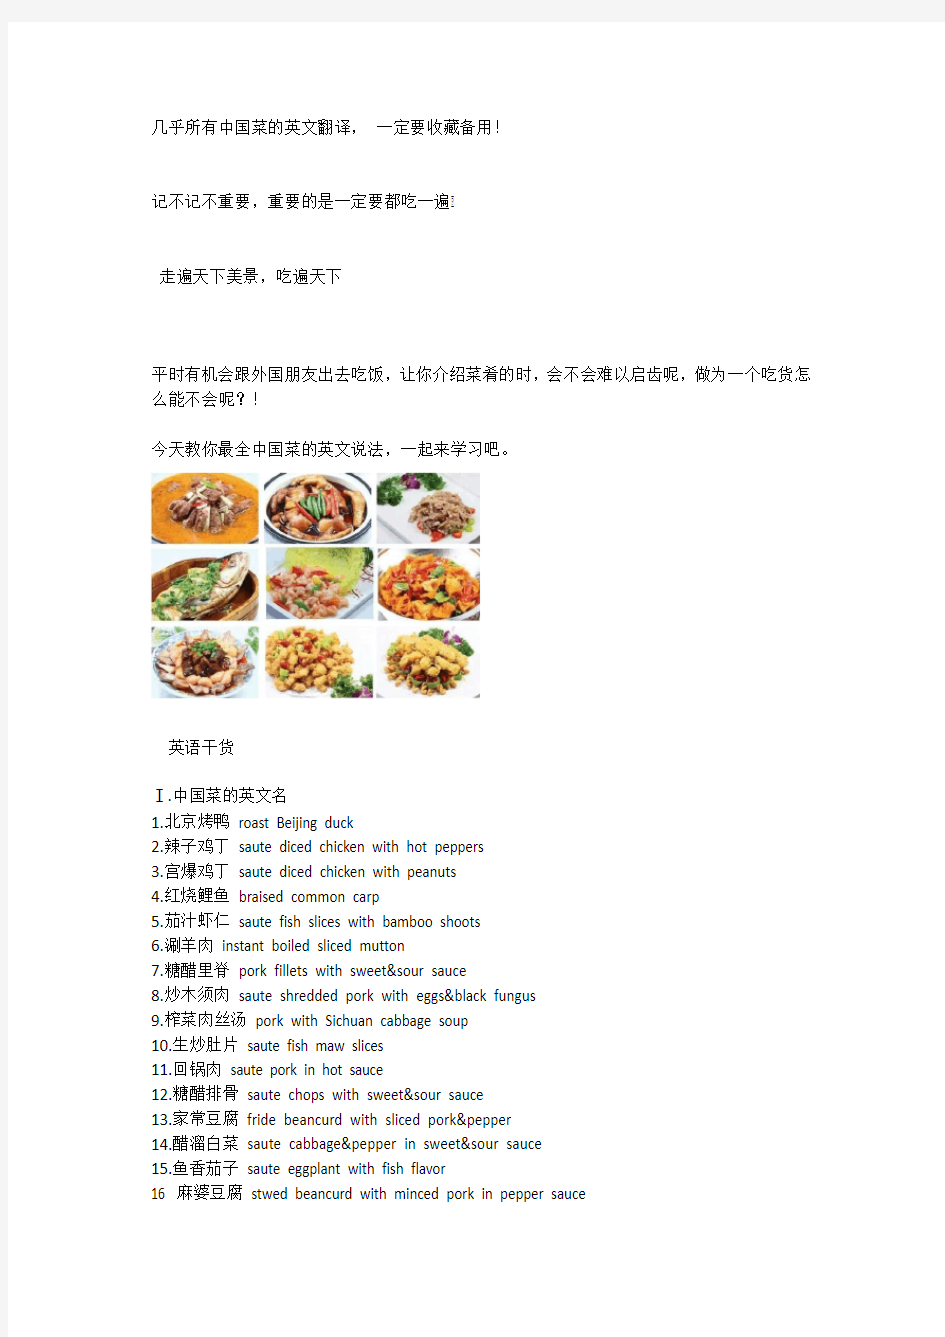 几乎所有中国菜的英文翻译, 爱吃的吃货必备